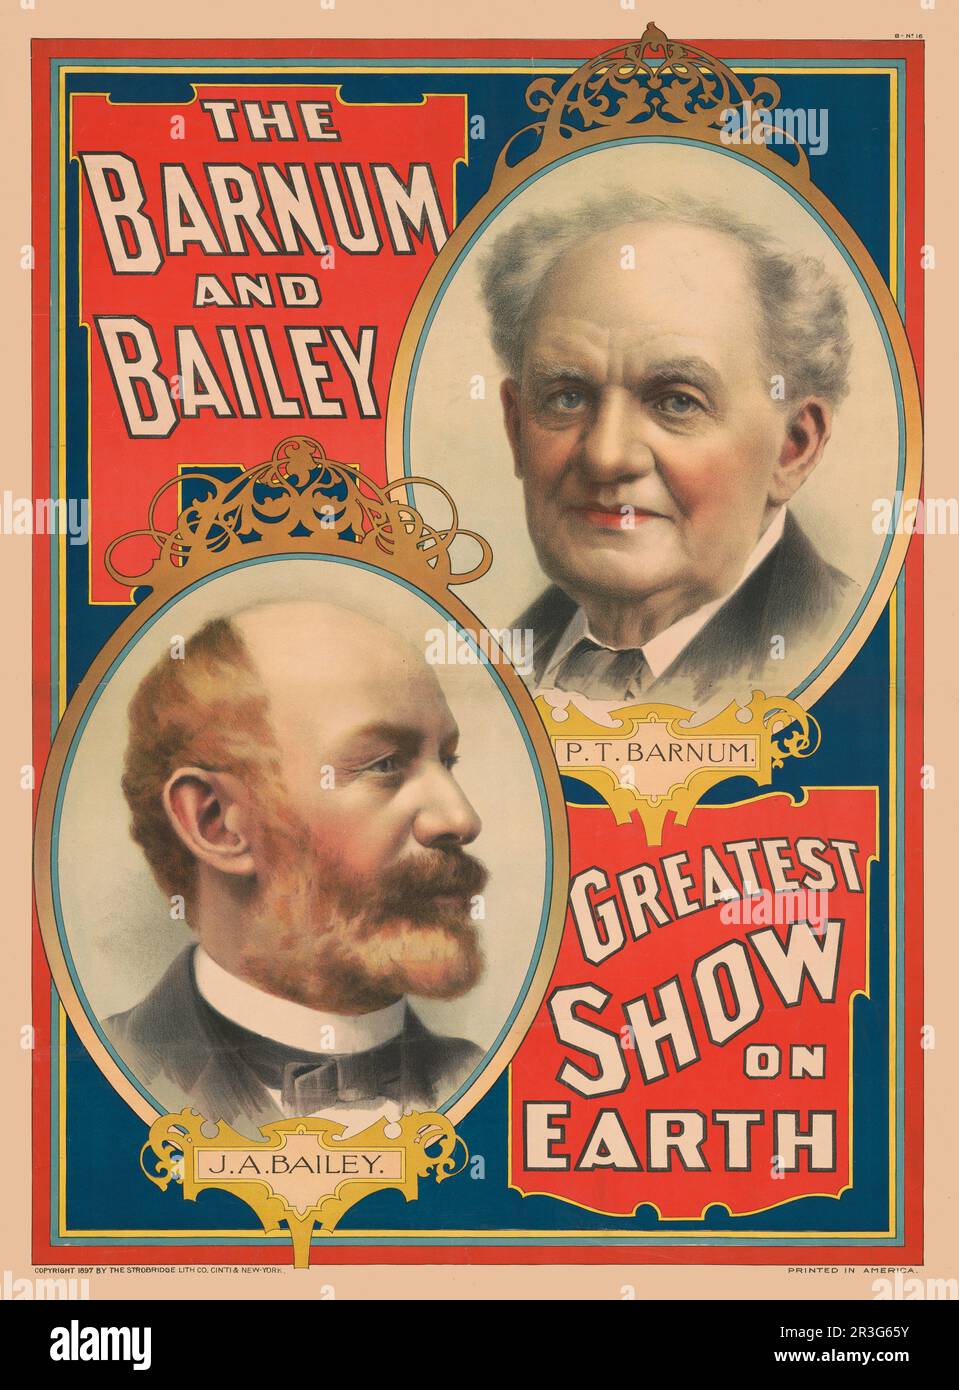 Porträts von P.T. Barnum und J.A. Bailey, ungefähr 1897. Die größte Show der Welt in Barnum & Bailey. Stockfoto